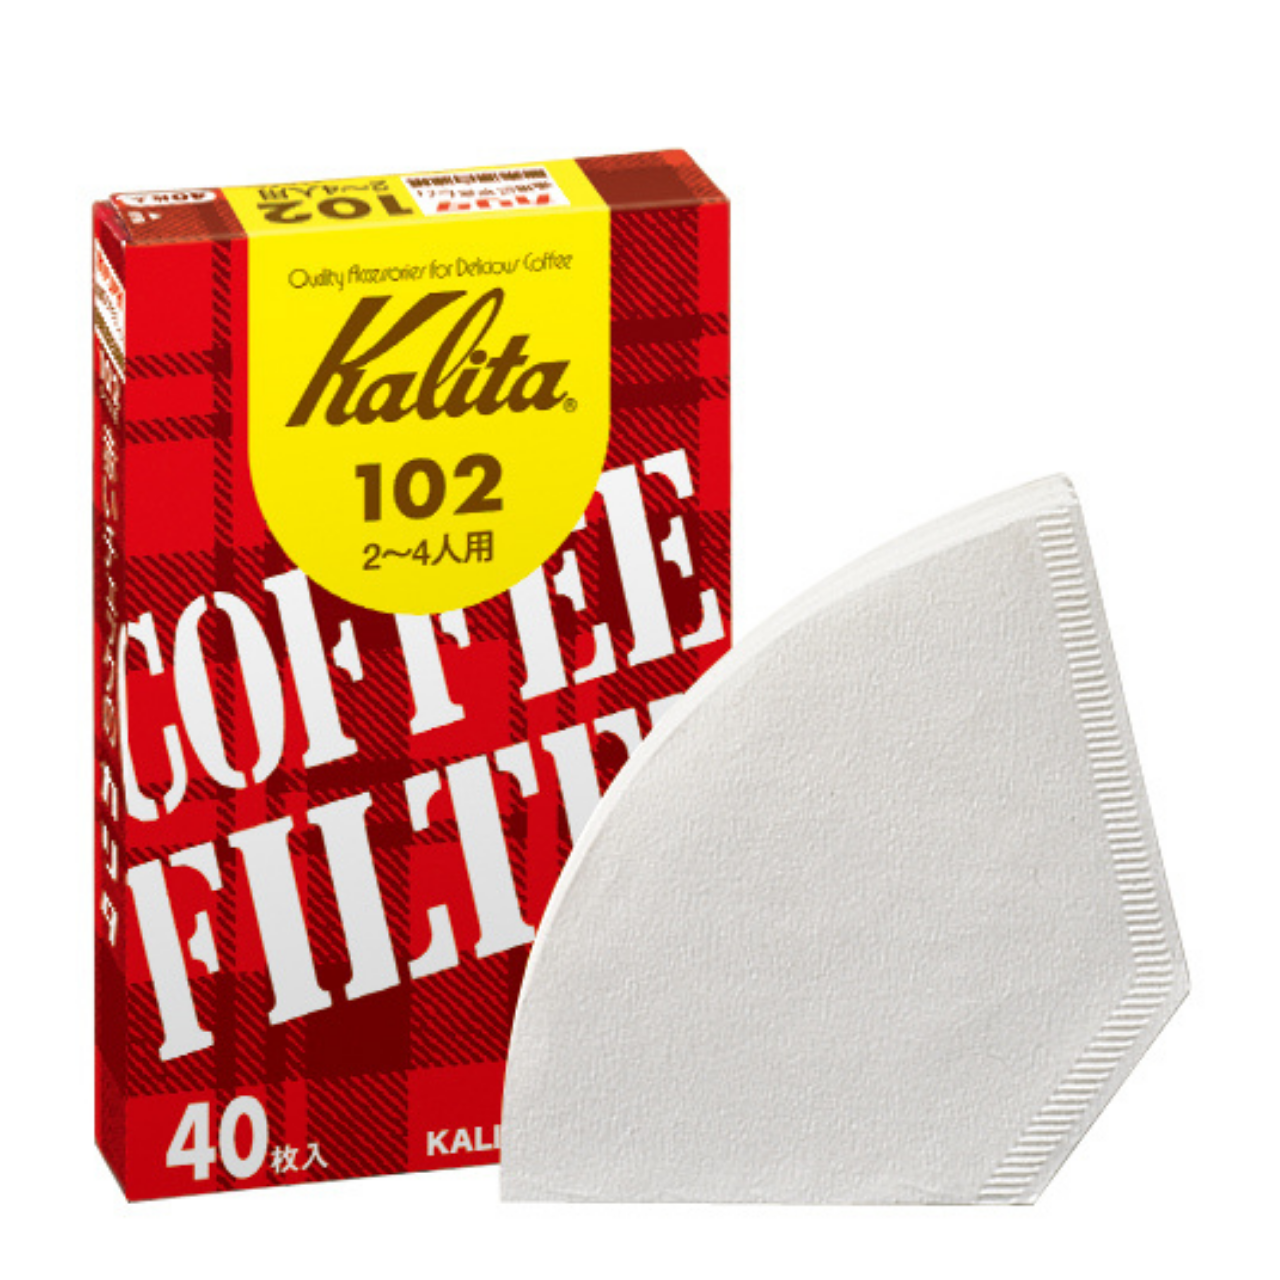 Kalita　コーヒーフィルター 102濾紙 ホワイト(40枚入)